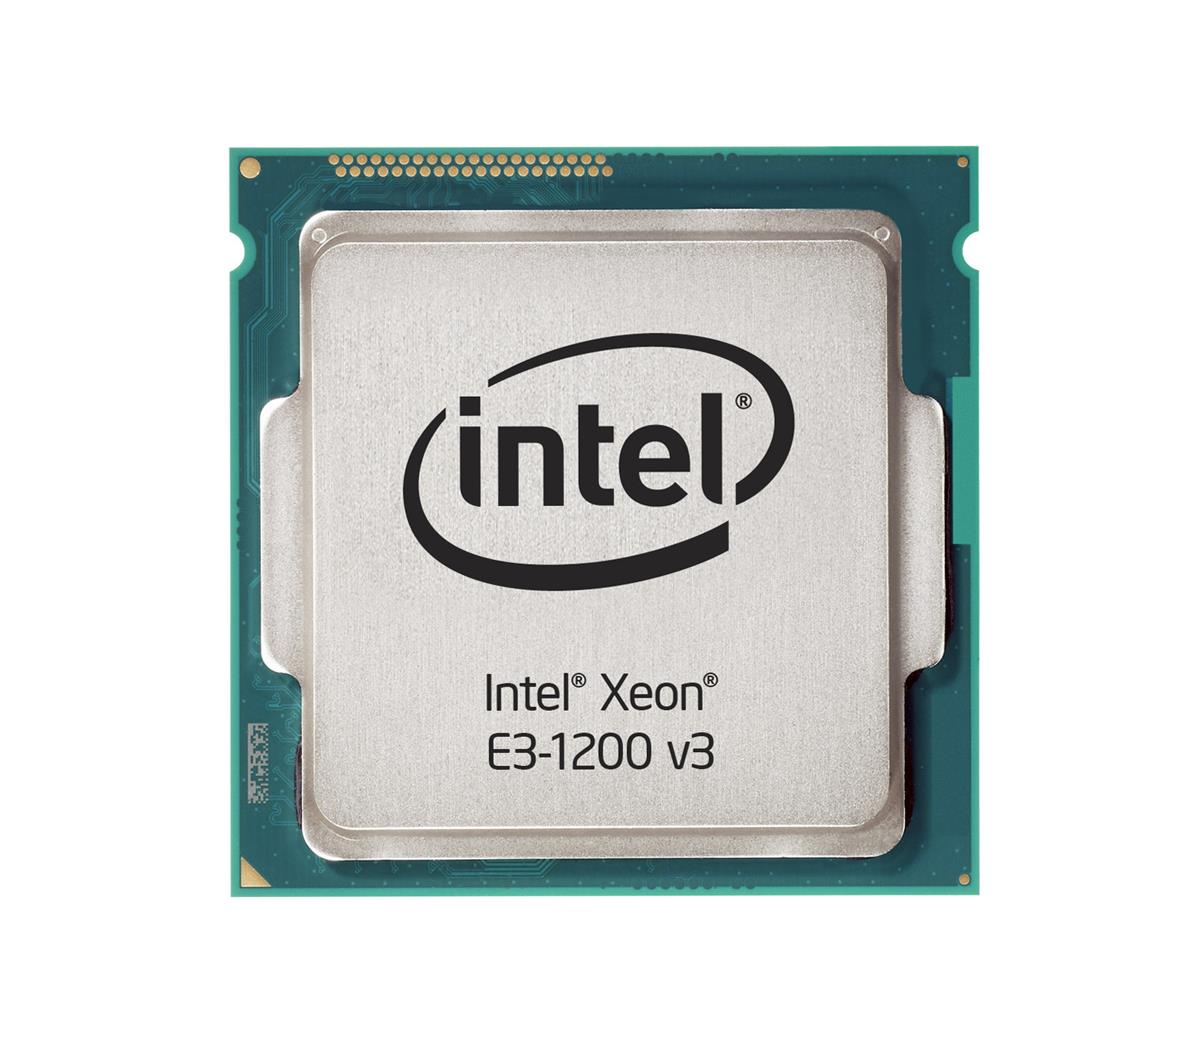 00KA440 IBM 3.70GHz 5.00GT/s DMI2 8MB L3 Cache Intel Xeon E3-1281 v3 Quad Core Processor Upgrade